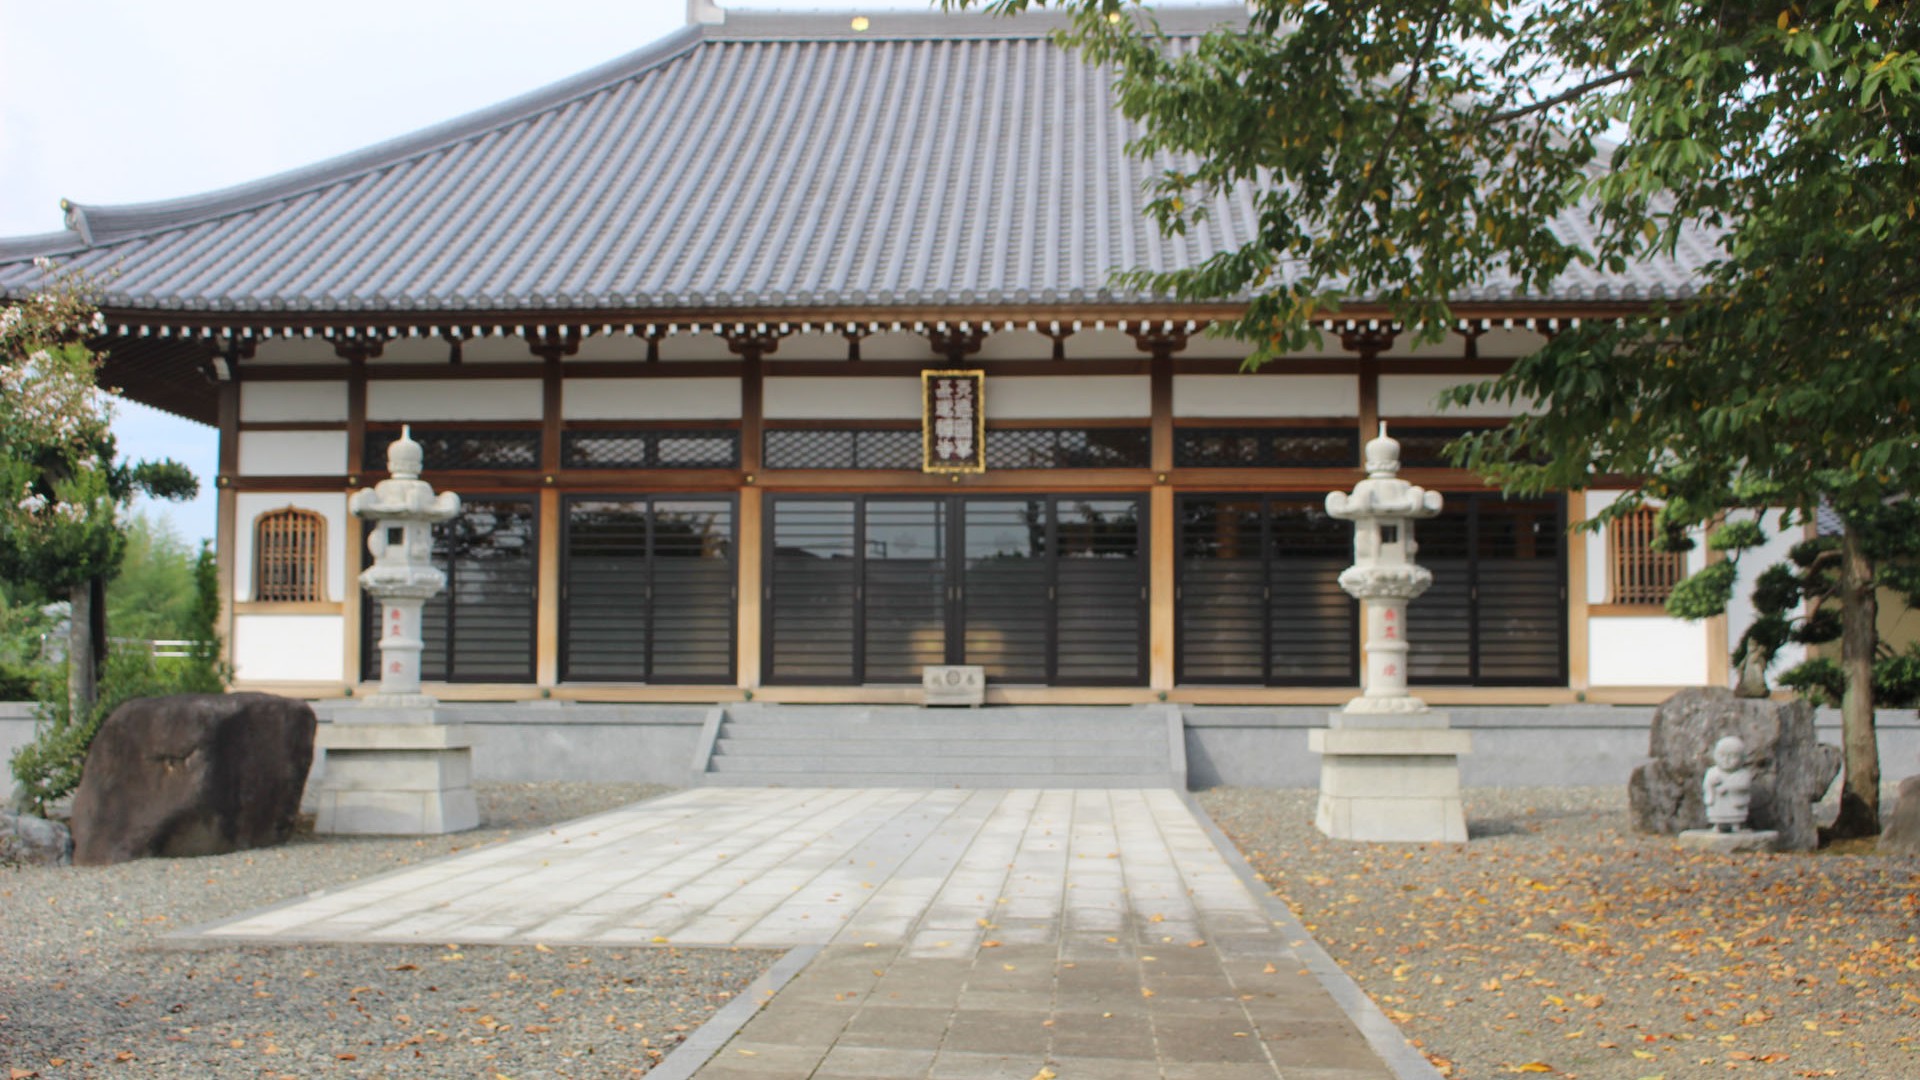 Di tích thành cổ Sanada, chùa Tentoku 